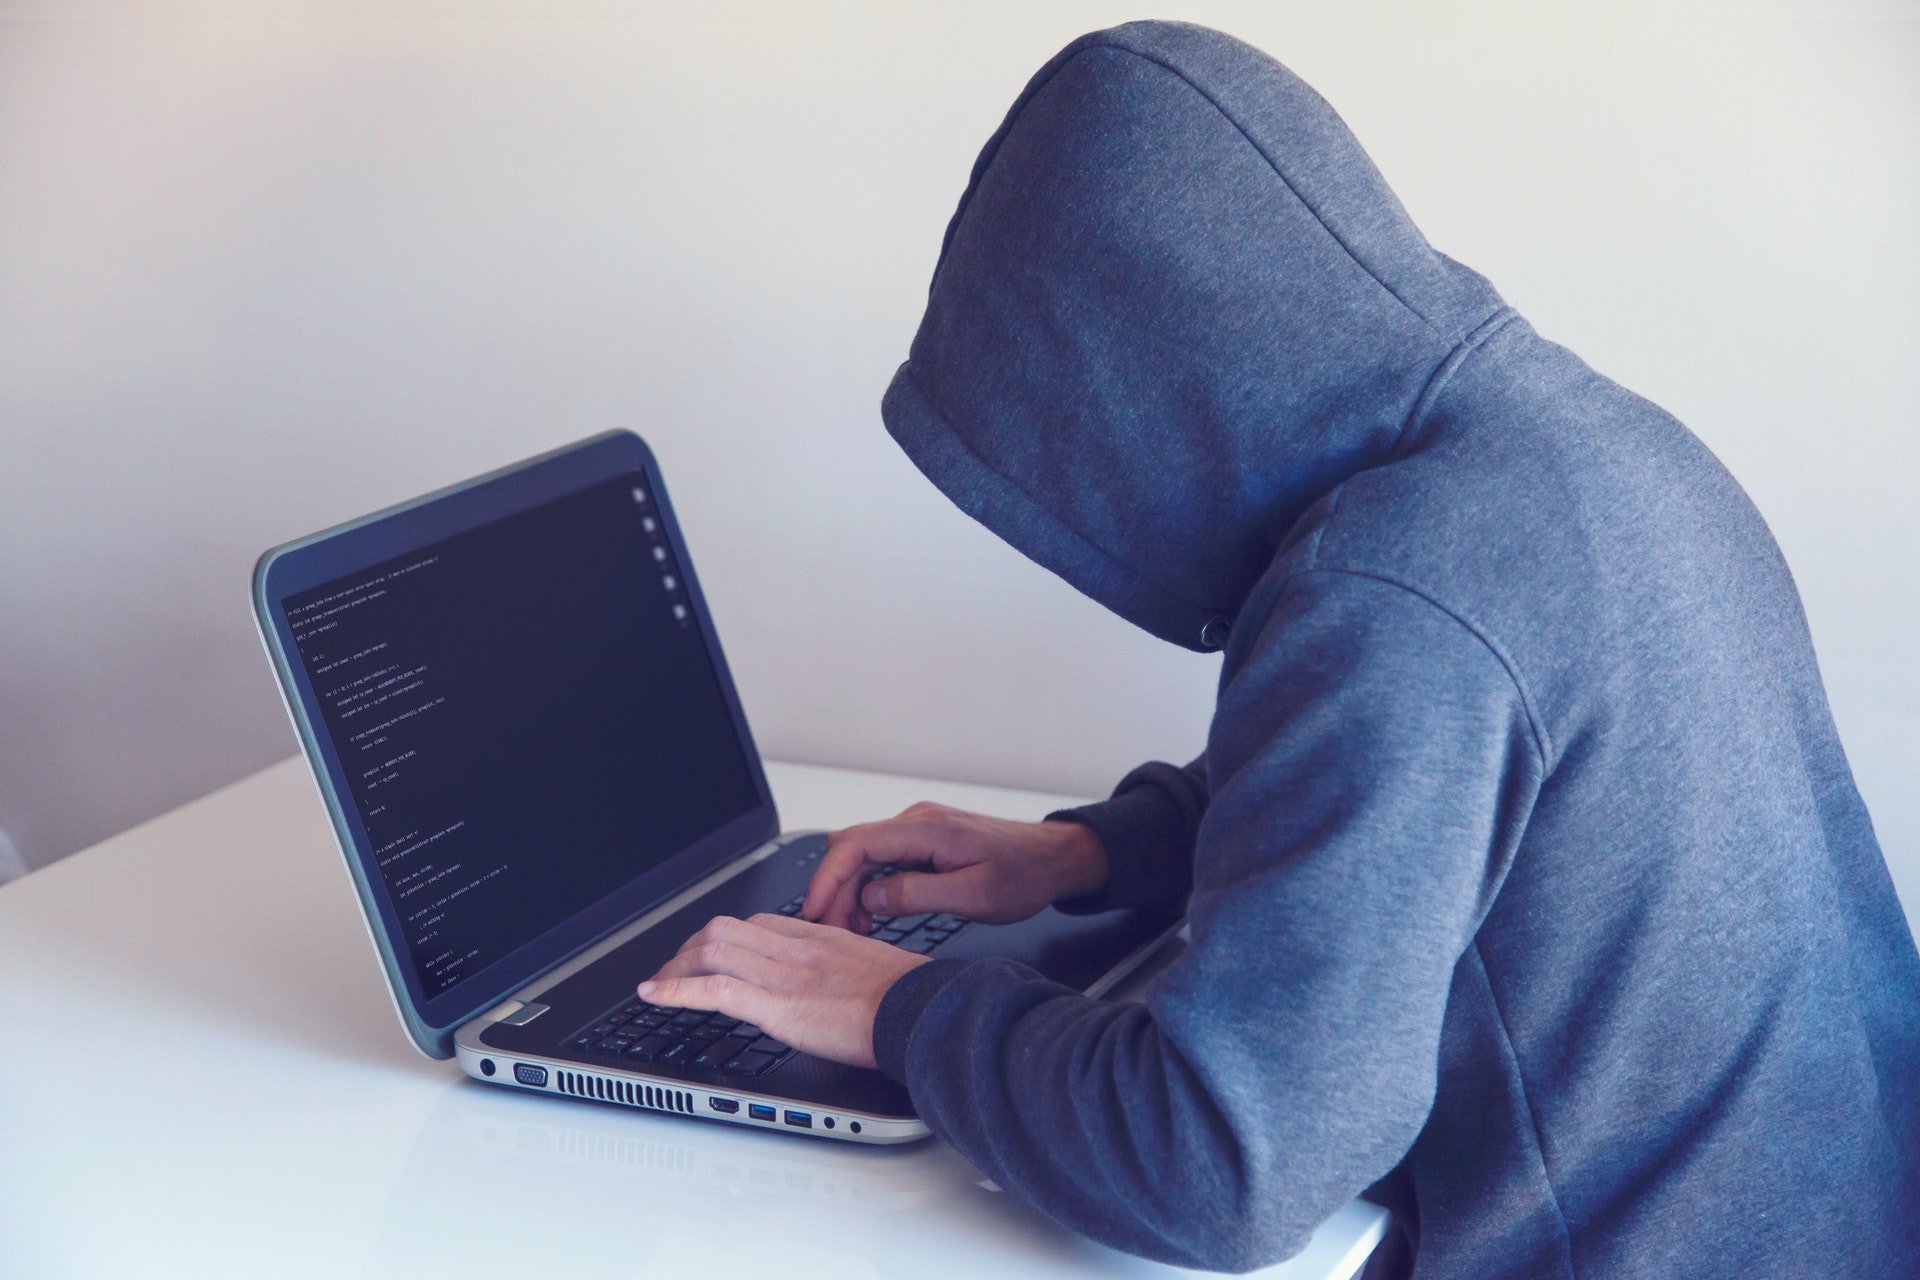 złodziej przestępca haker laptop niebezpieczeństwo bezpieczeństwo w sieci